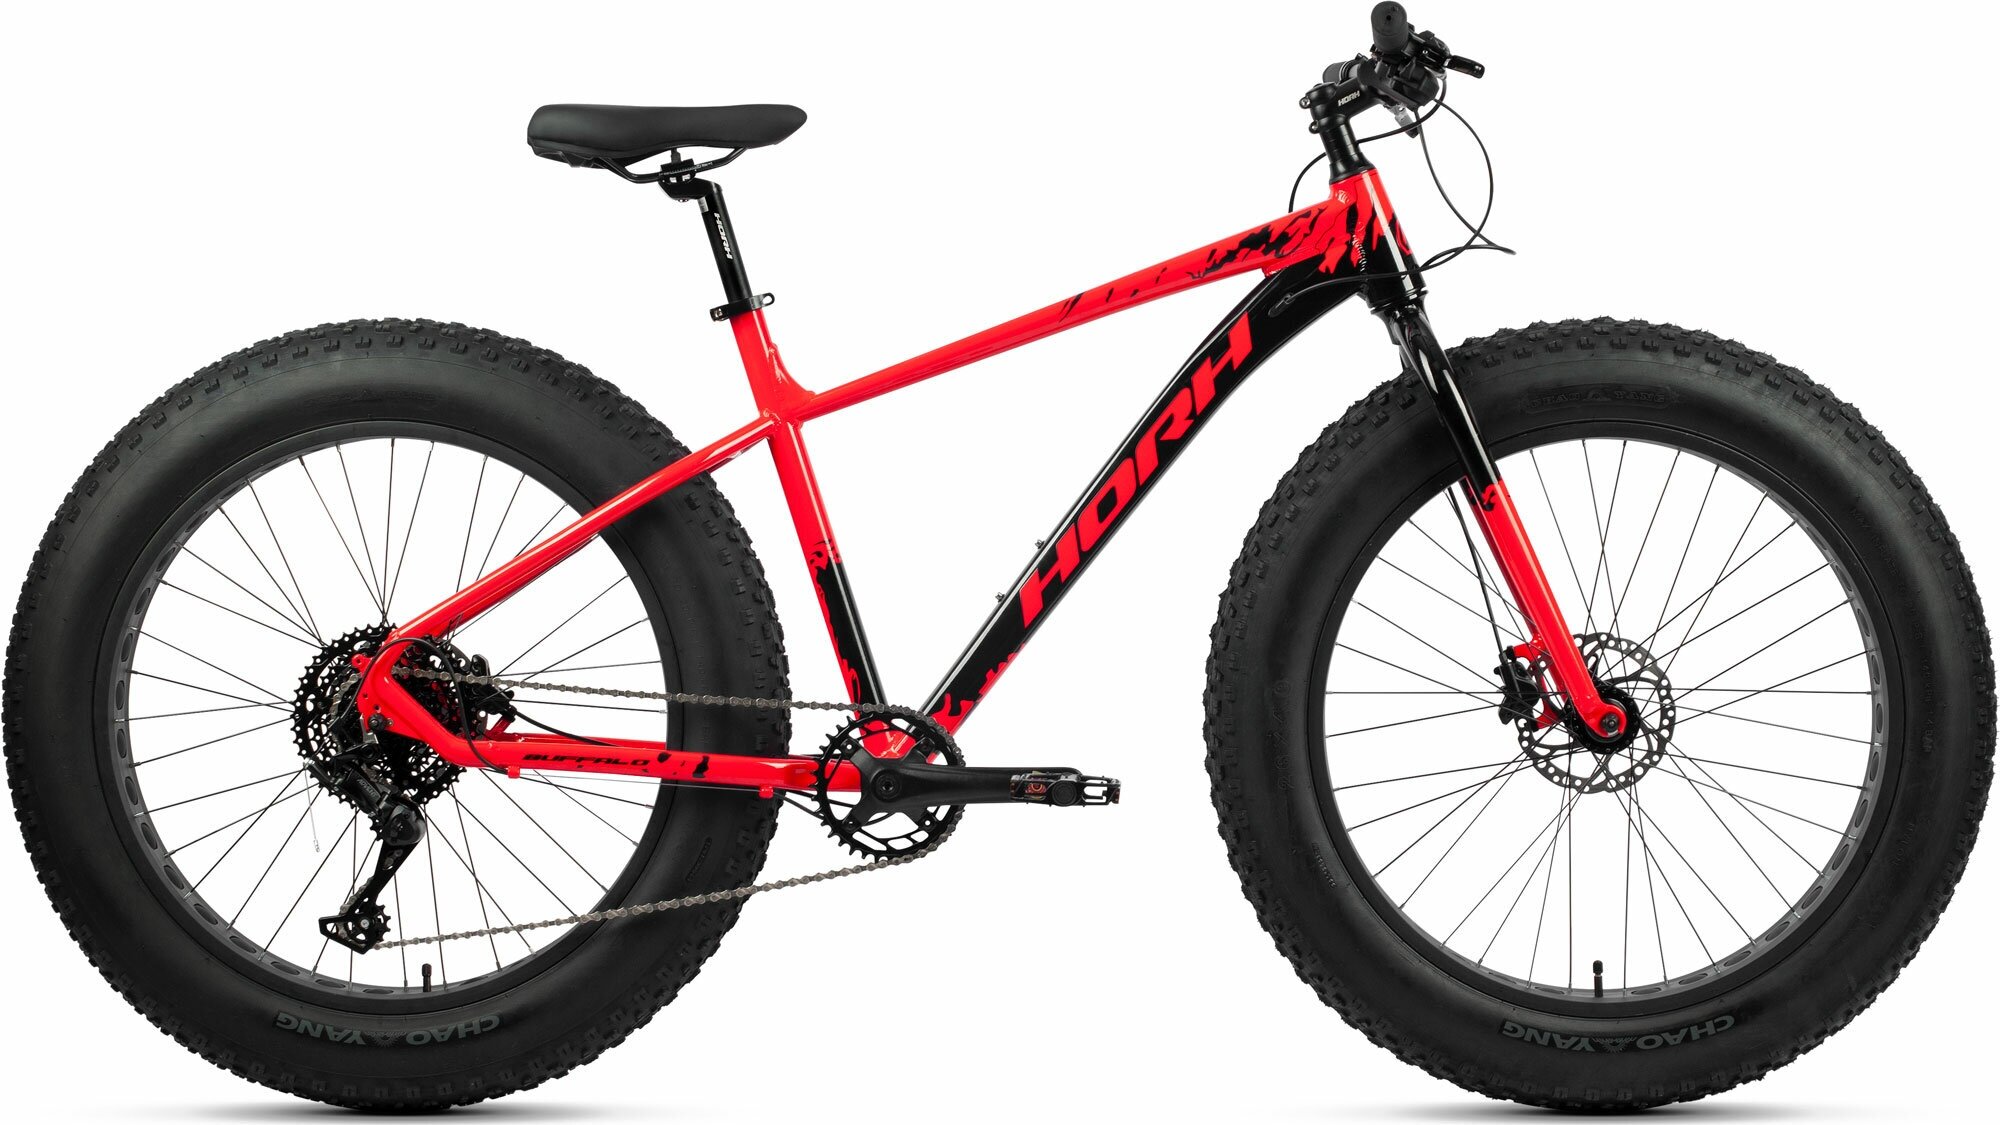 Велосипед fat-bike, фэтбайк HORH BUFFALO 26" (2023), ригид, взрослый, мужской, алюминиевая рама, оборудование Microshift, 9 скоростей, дисковые гидравлические тормоза, цвет Black-Red, черный/красный цвет, размер рамы 17", для роста 170-180 см